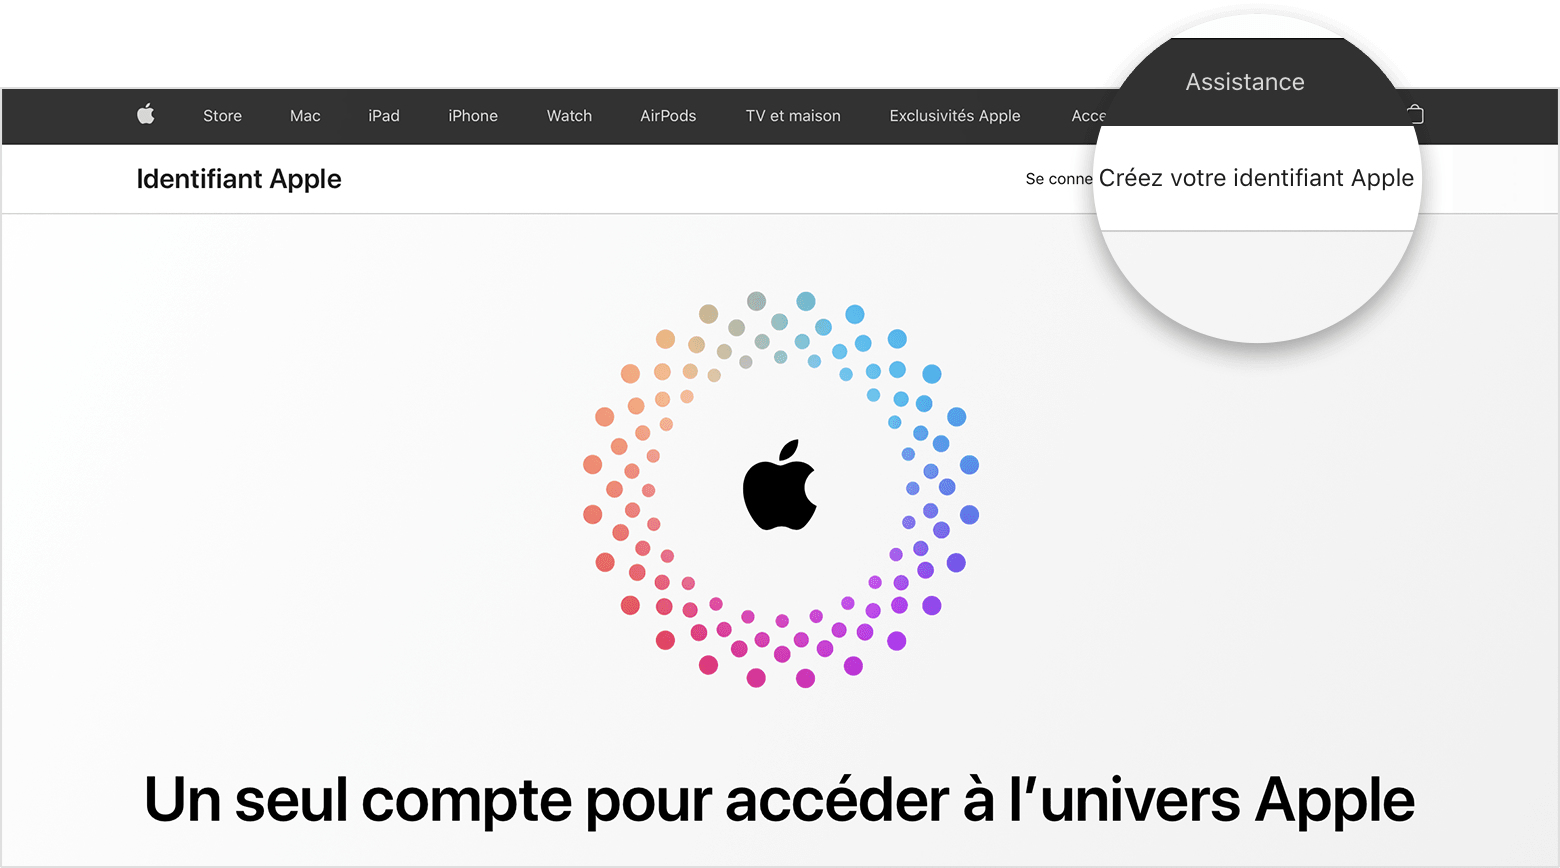 Capture d’écran du site appleid.apple.com avec un logo Apple en son centre entouré de cercles concentriques colorés.